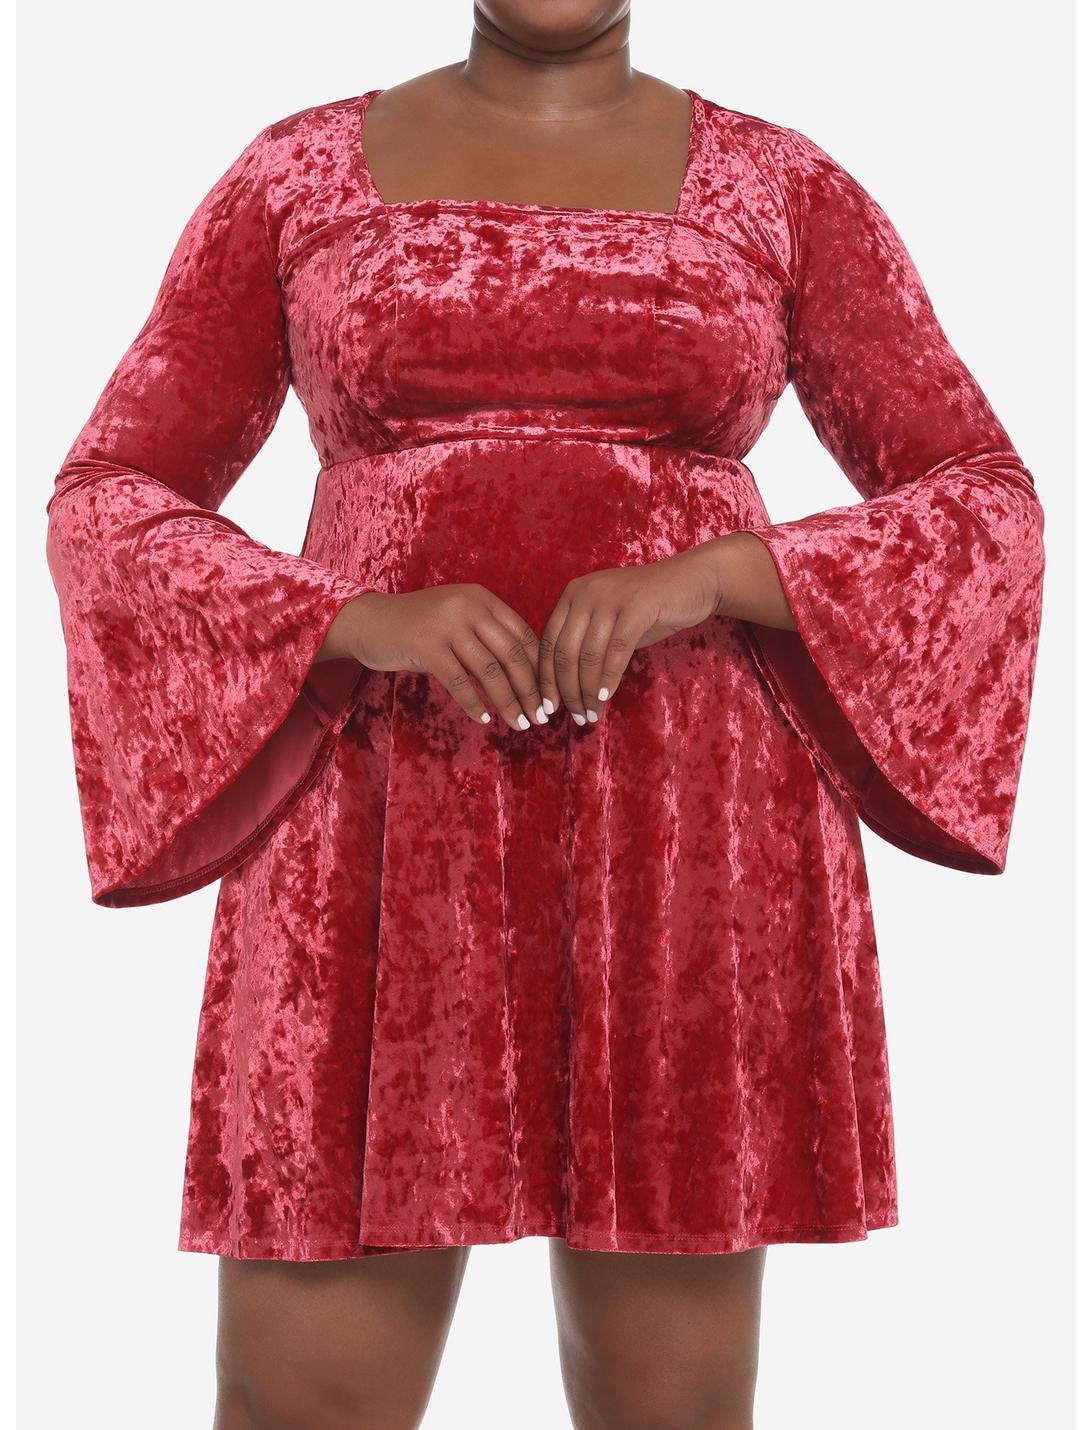 Red Crushed Velvet Bell-Sleeve Mini Dress Plus Size, CHILLI PEPPER, hi-res